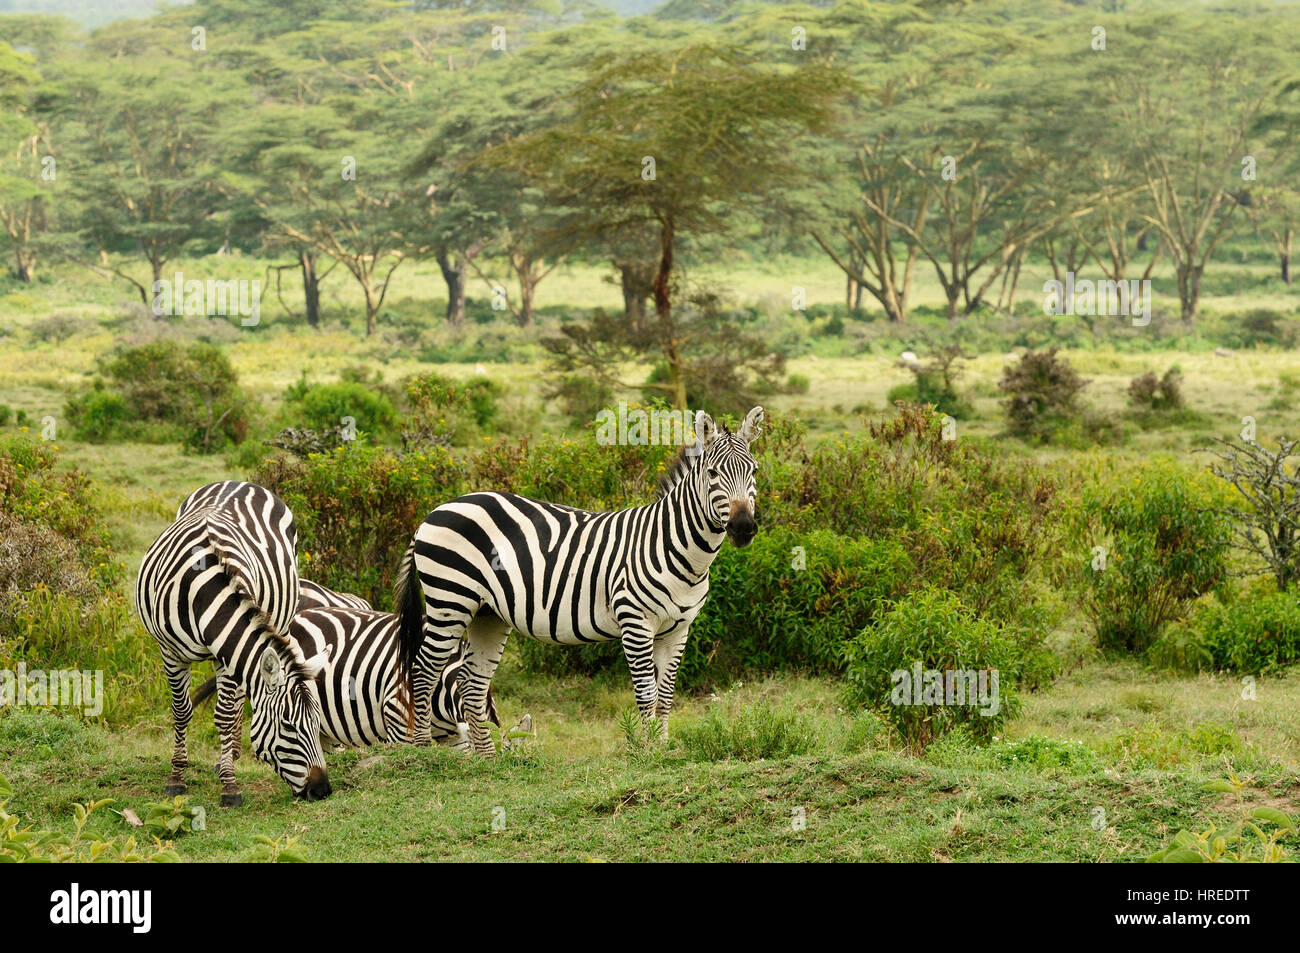 Wildlife  Zebras in safari in Africa Stock Photo